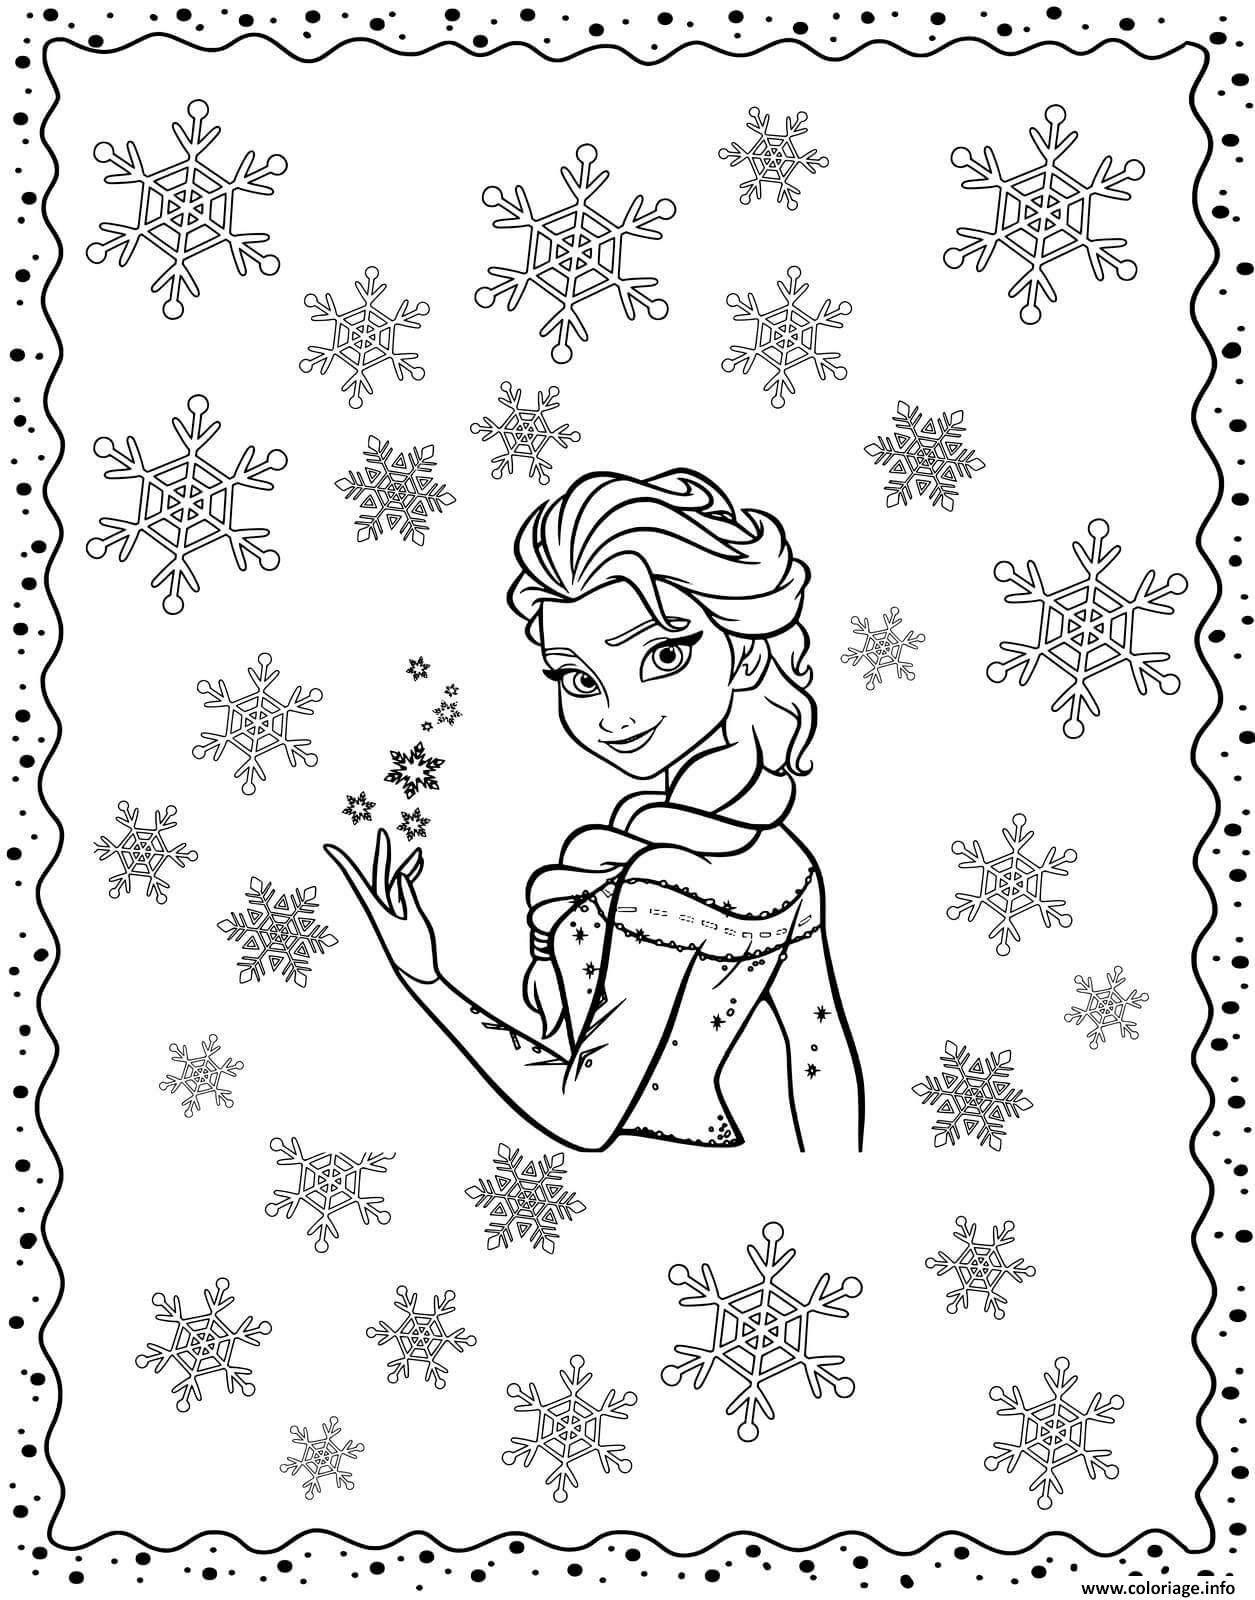 Coloriage Reine Des Neiges 2 Avec Snowflakes For Winter Dessin à Imprimer